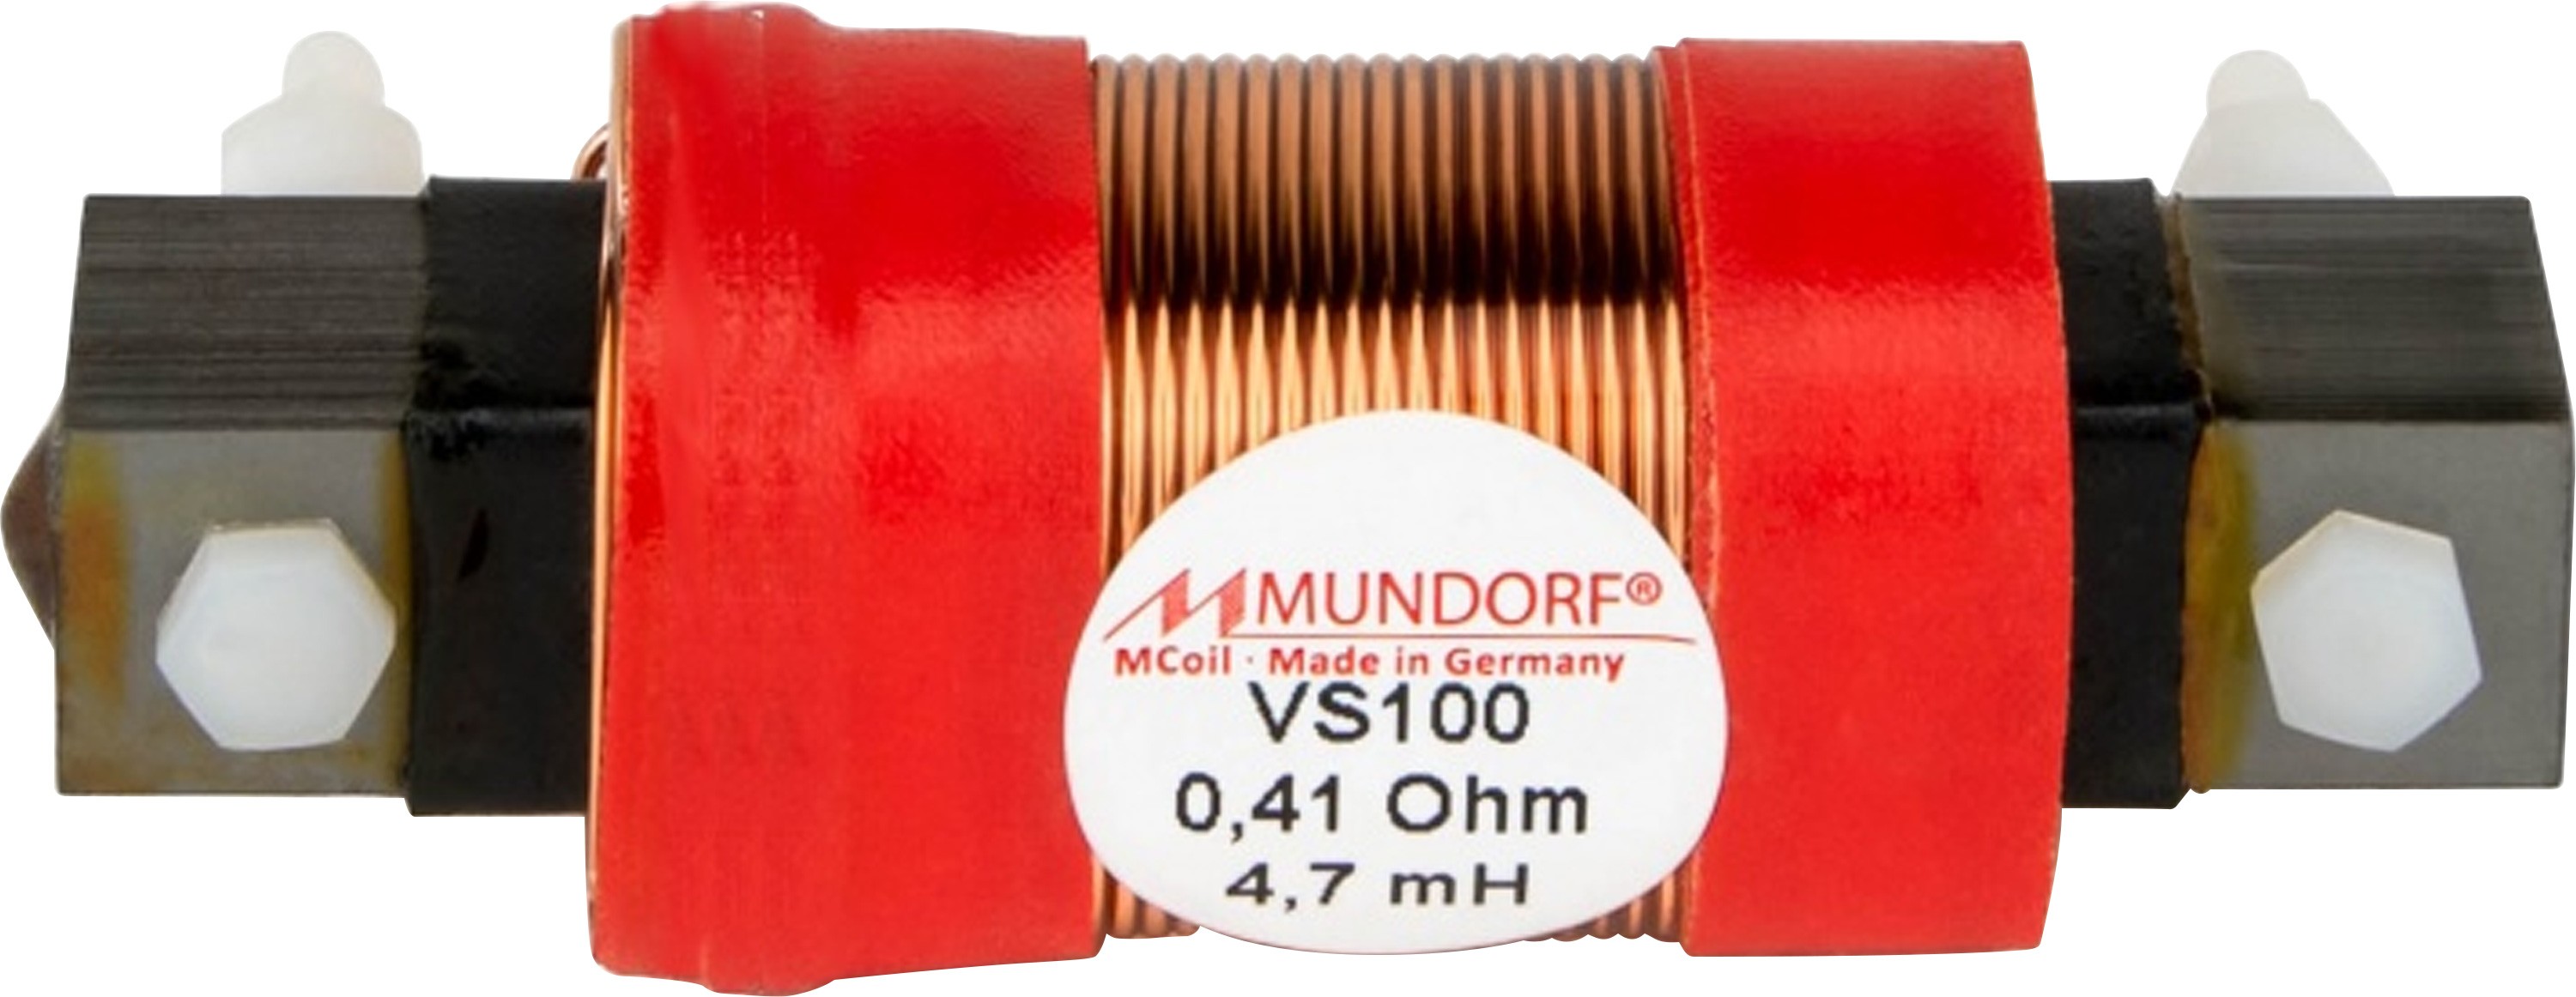 MUNDORF VS100-8.2 MCOIL ICORE Copper Coil Feron Core 8.2mH